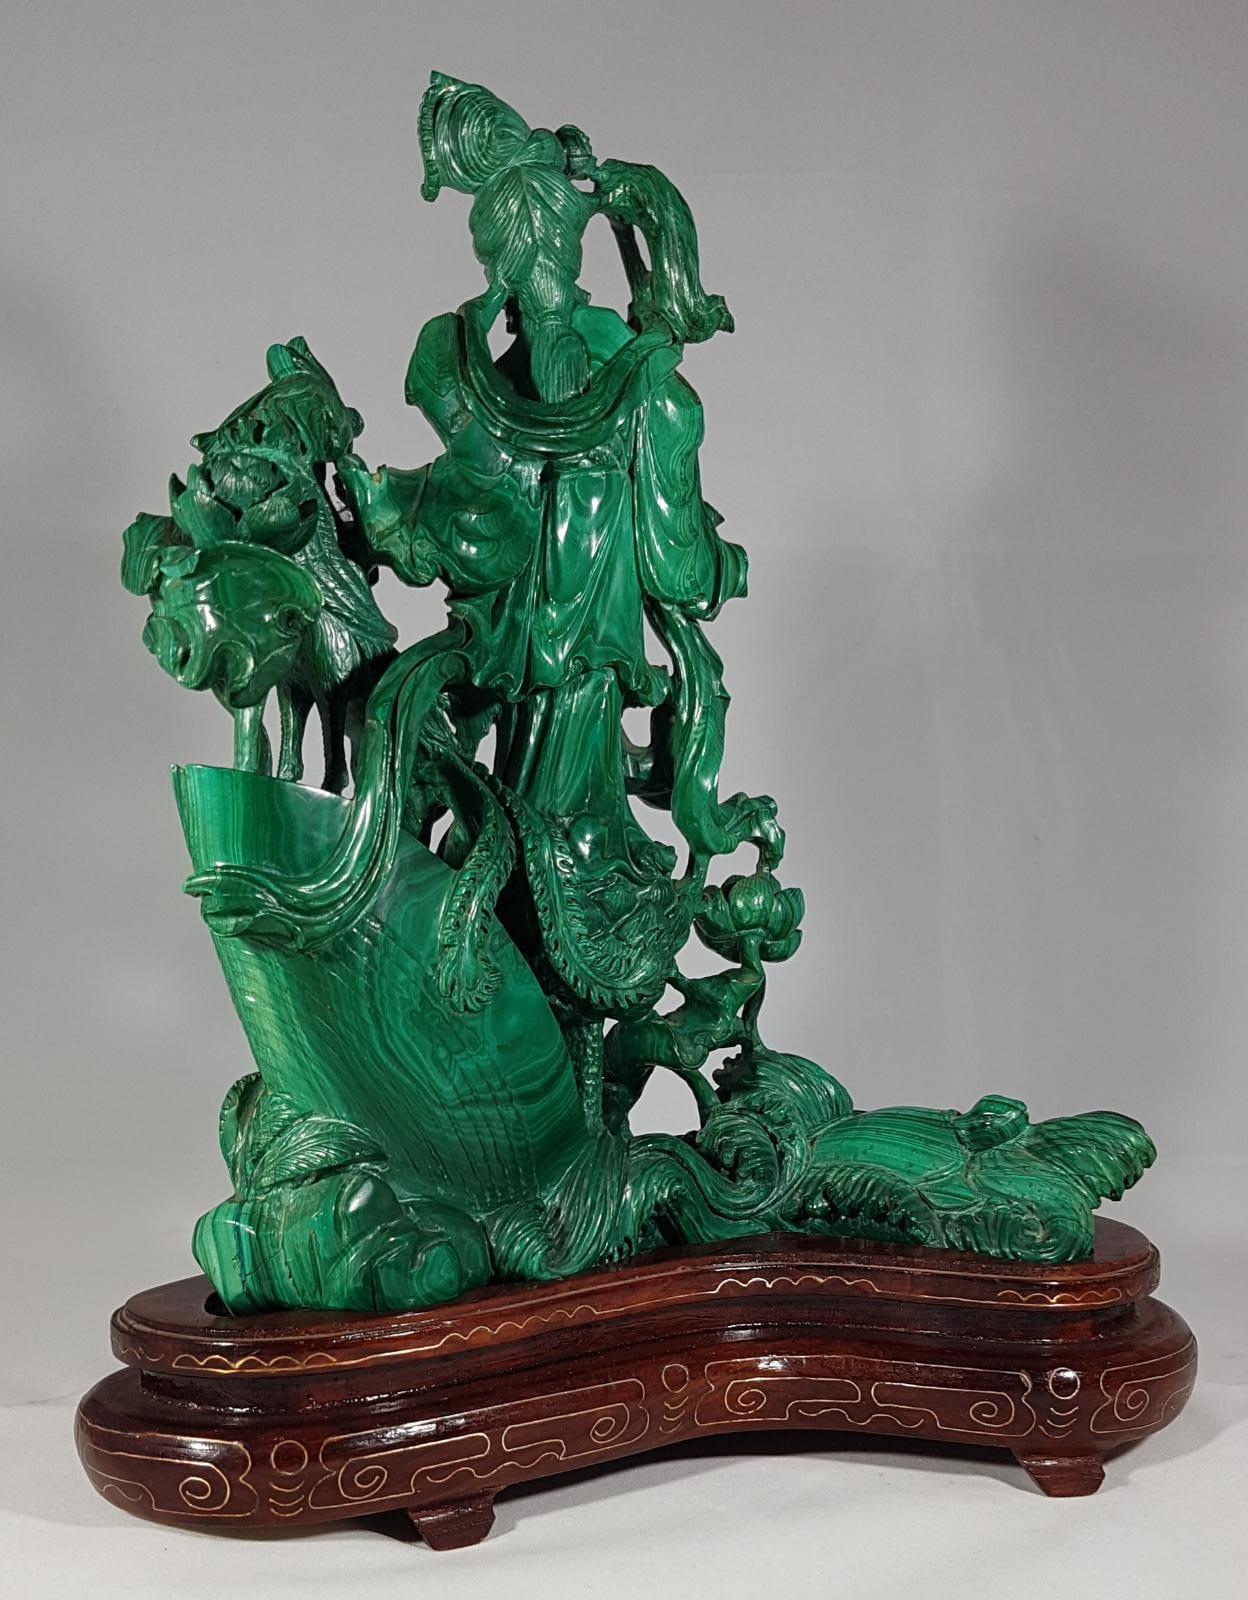 20th Century Female figure in green malachite